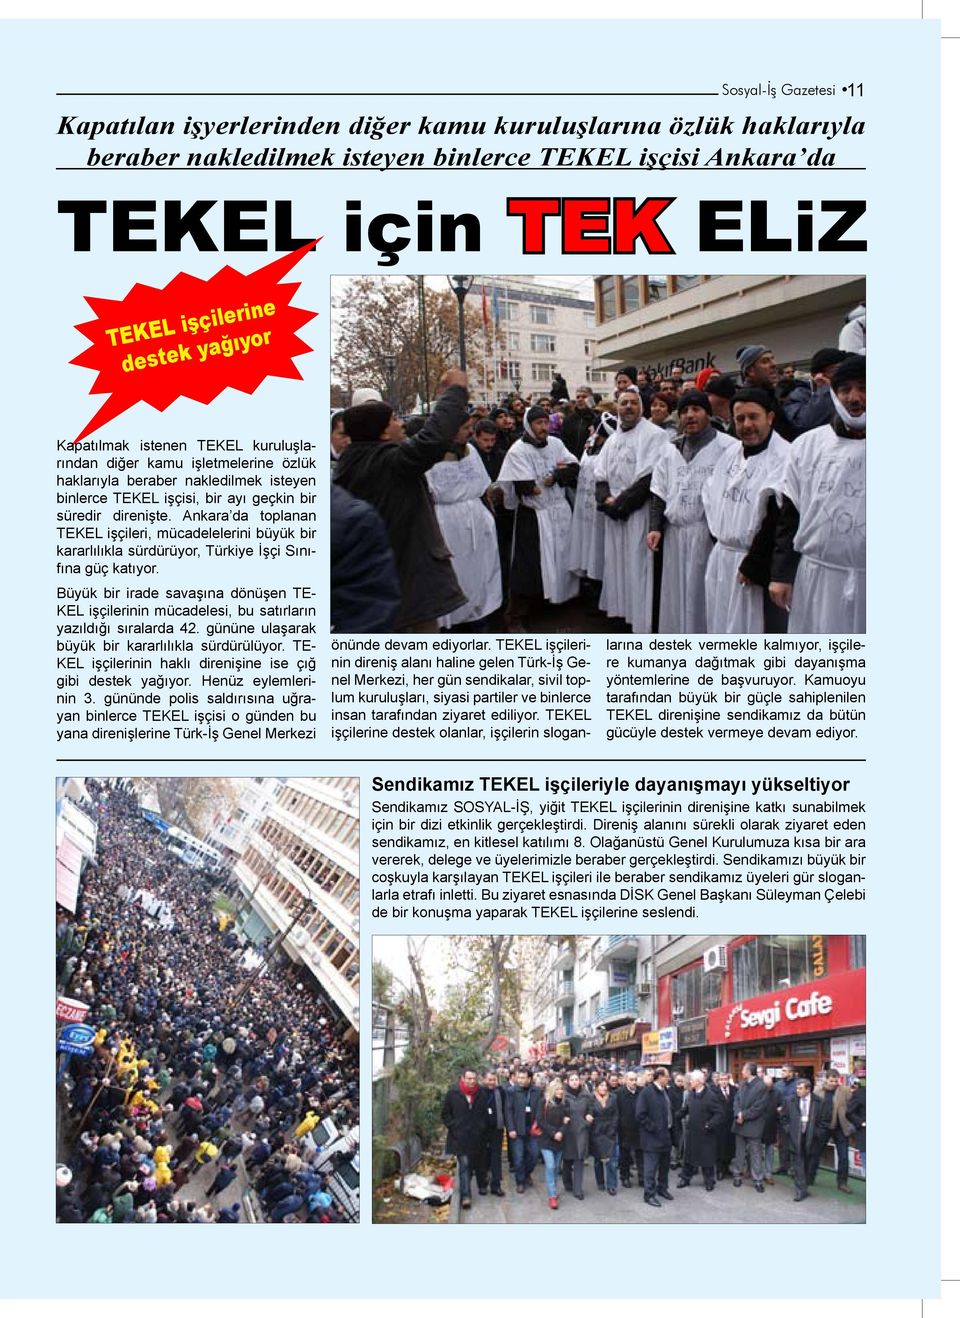 Ankara da toplanan TEKEL işçileri, mücadelelerini büyük bir kararlılıkla sürdürüyor, Türkiye İşçi Sınıfına güç katıyor.